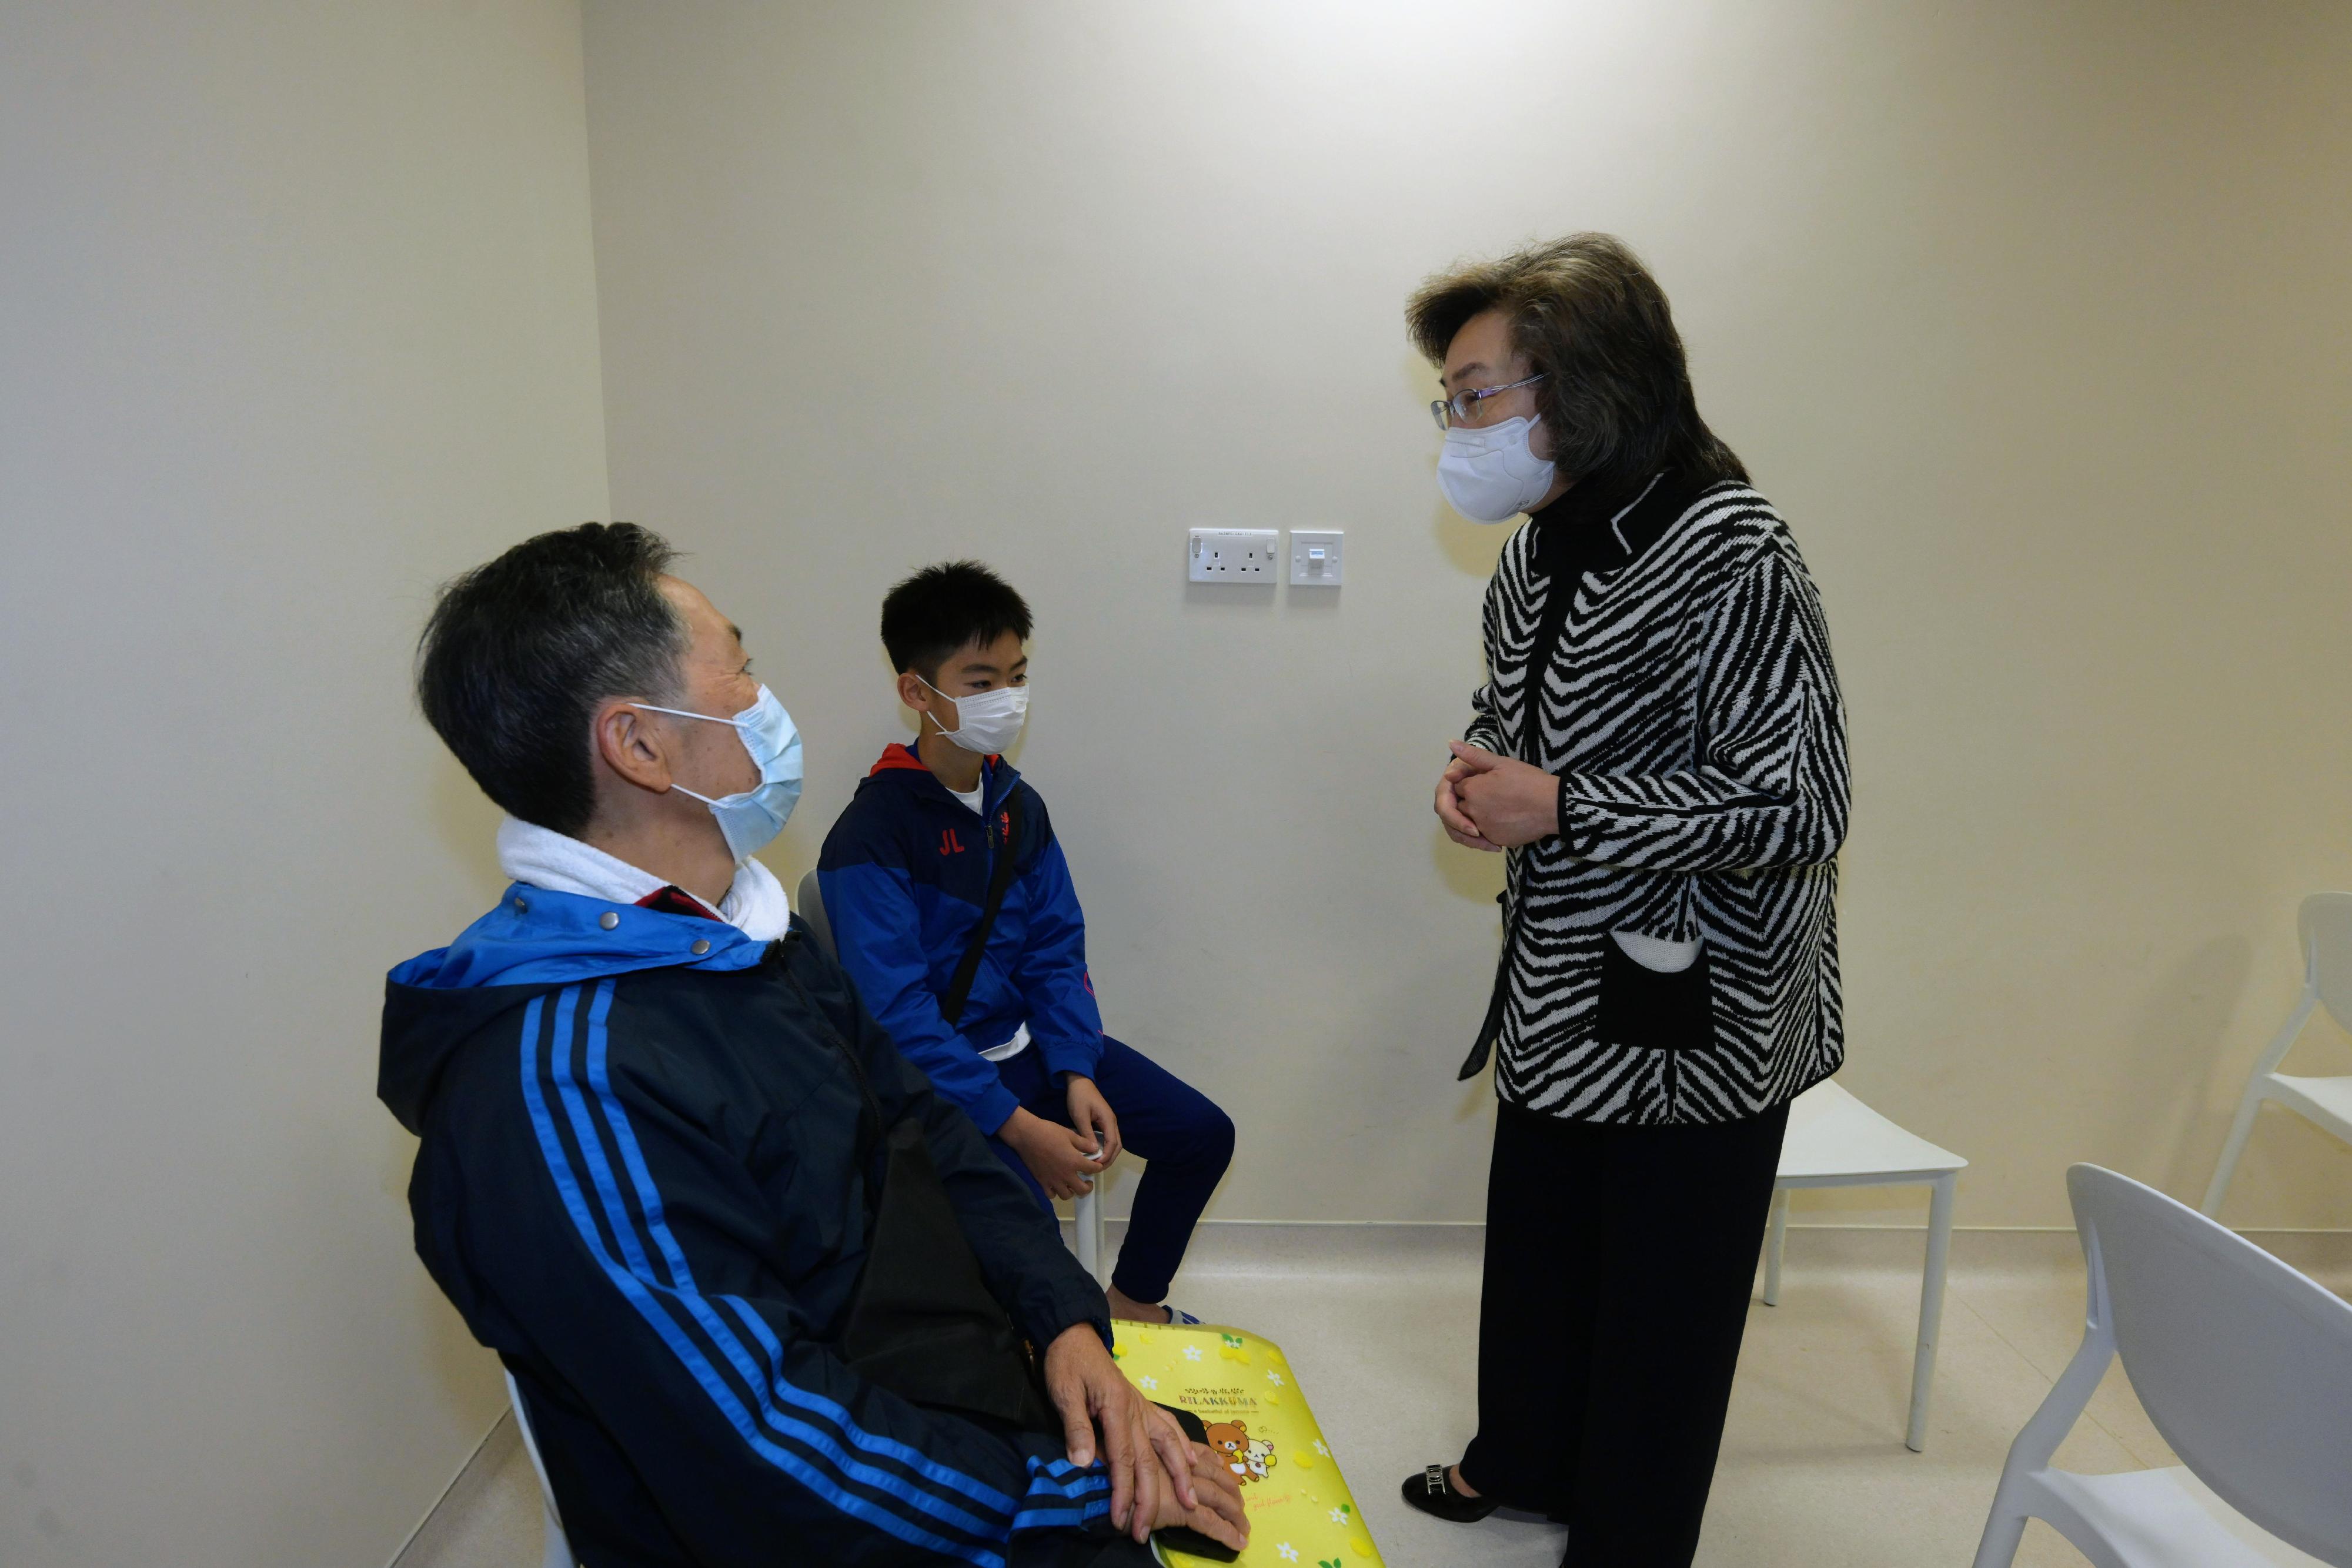 公務員事務局局長楊何蓓茵今日（十二月一日）到香港中文大學醫院社區疫苗接種中心，視察市民接種復必泰二價疫苗的情況。圖示楊何蓓茵（右一）與前來接種第二劑新冠疫苗的13歲男童及其祖父交談，了解他們對接種新冠疫苗的意見。